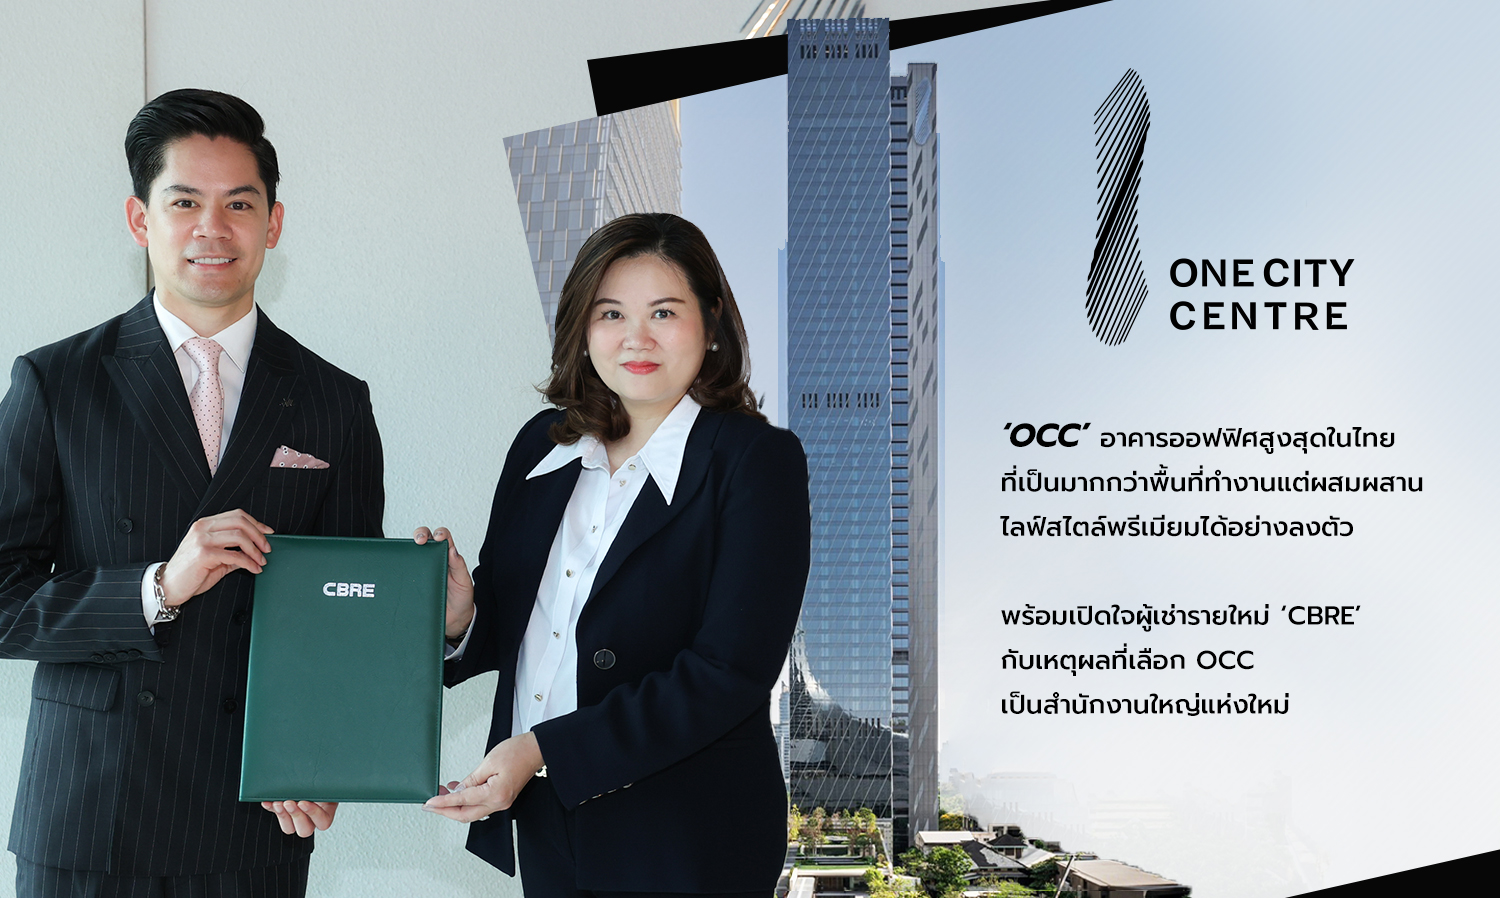 タイで最も高いオフィスビル OCC 新たな CBRE テナントのオープンと新本社として OCC を選んだ理由。